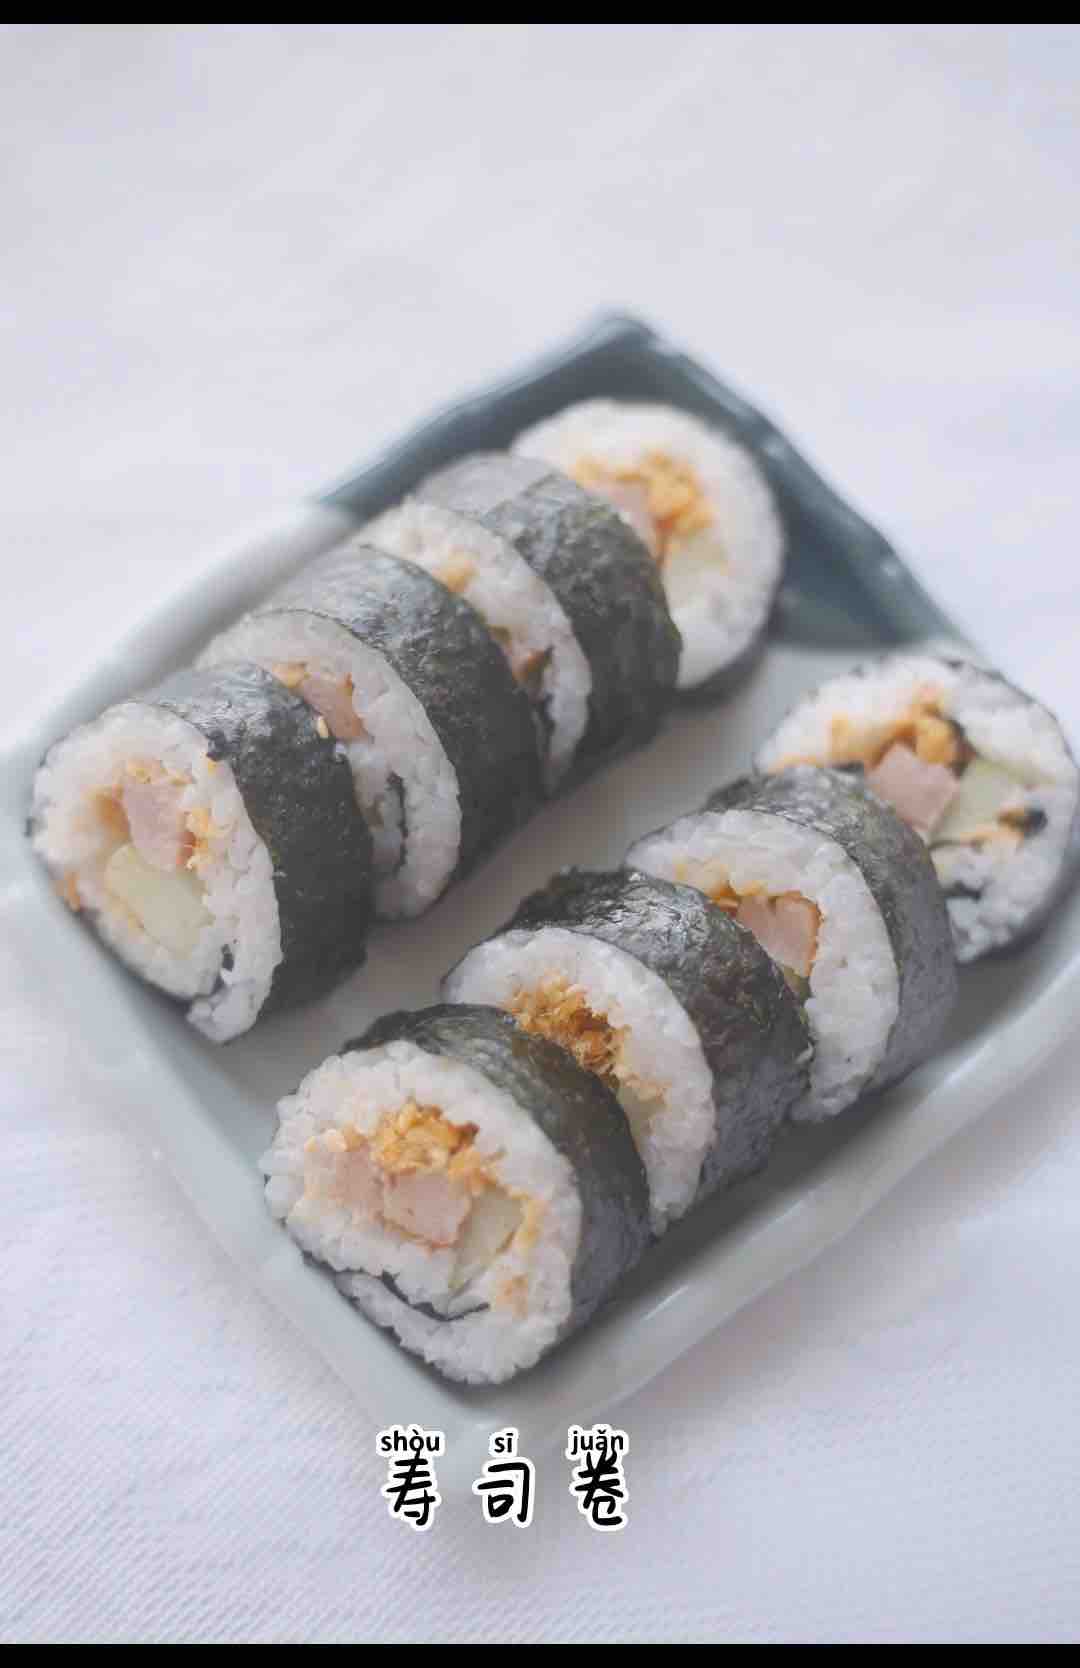 Sushi Rolls recipe